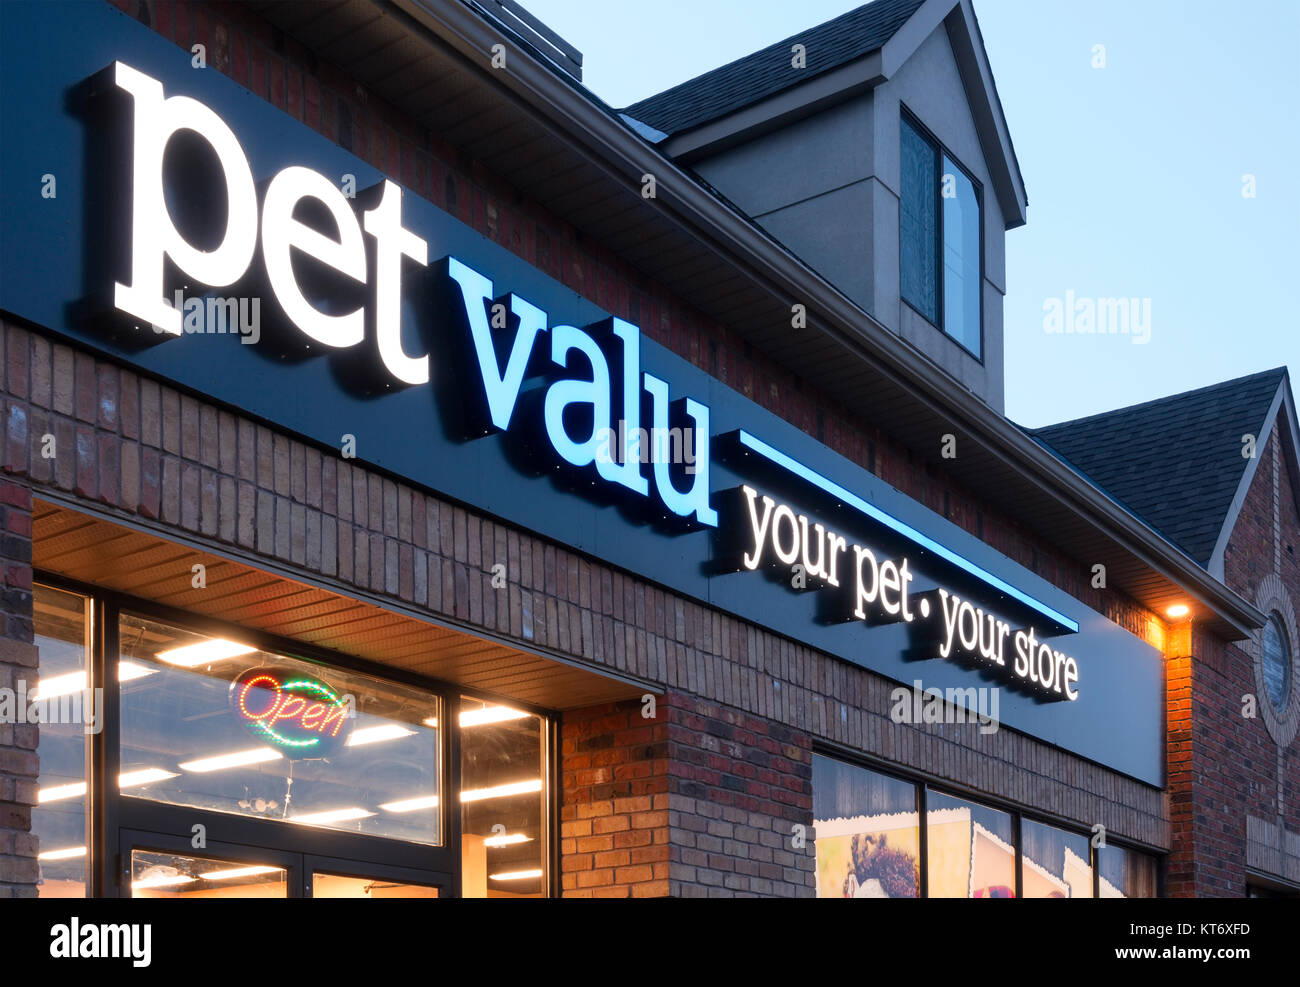 Ein Pet Valu Inc. Storefront in der Dämmerung mit einem beleuchteten Zeichen. Stockfoto